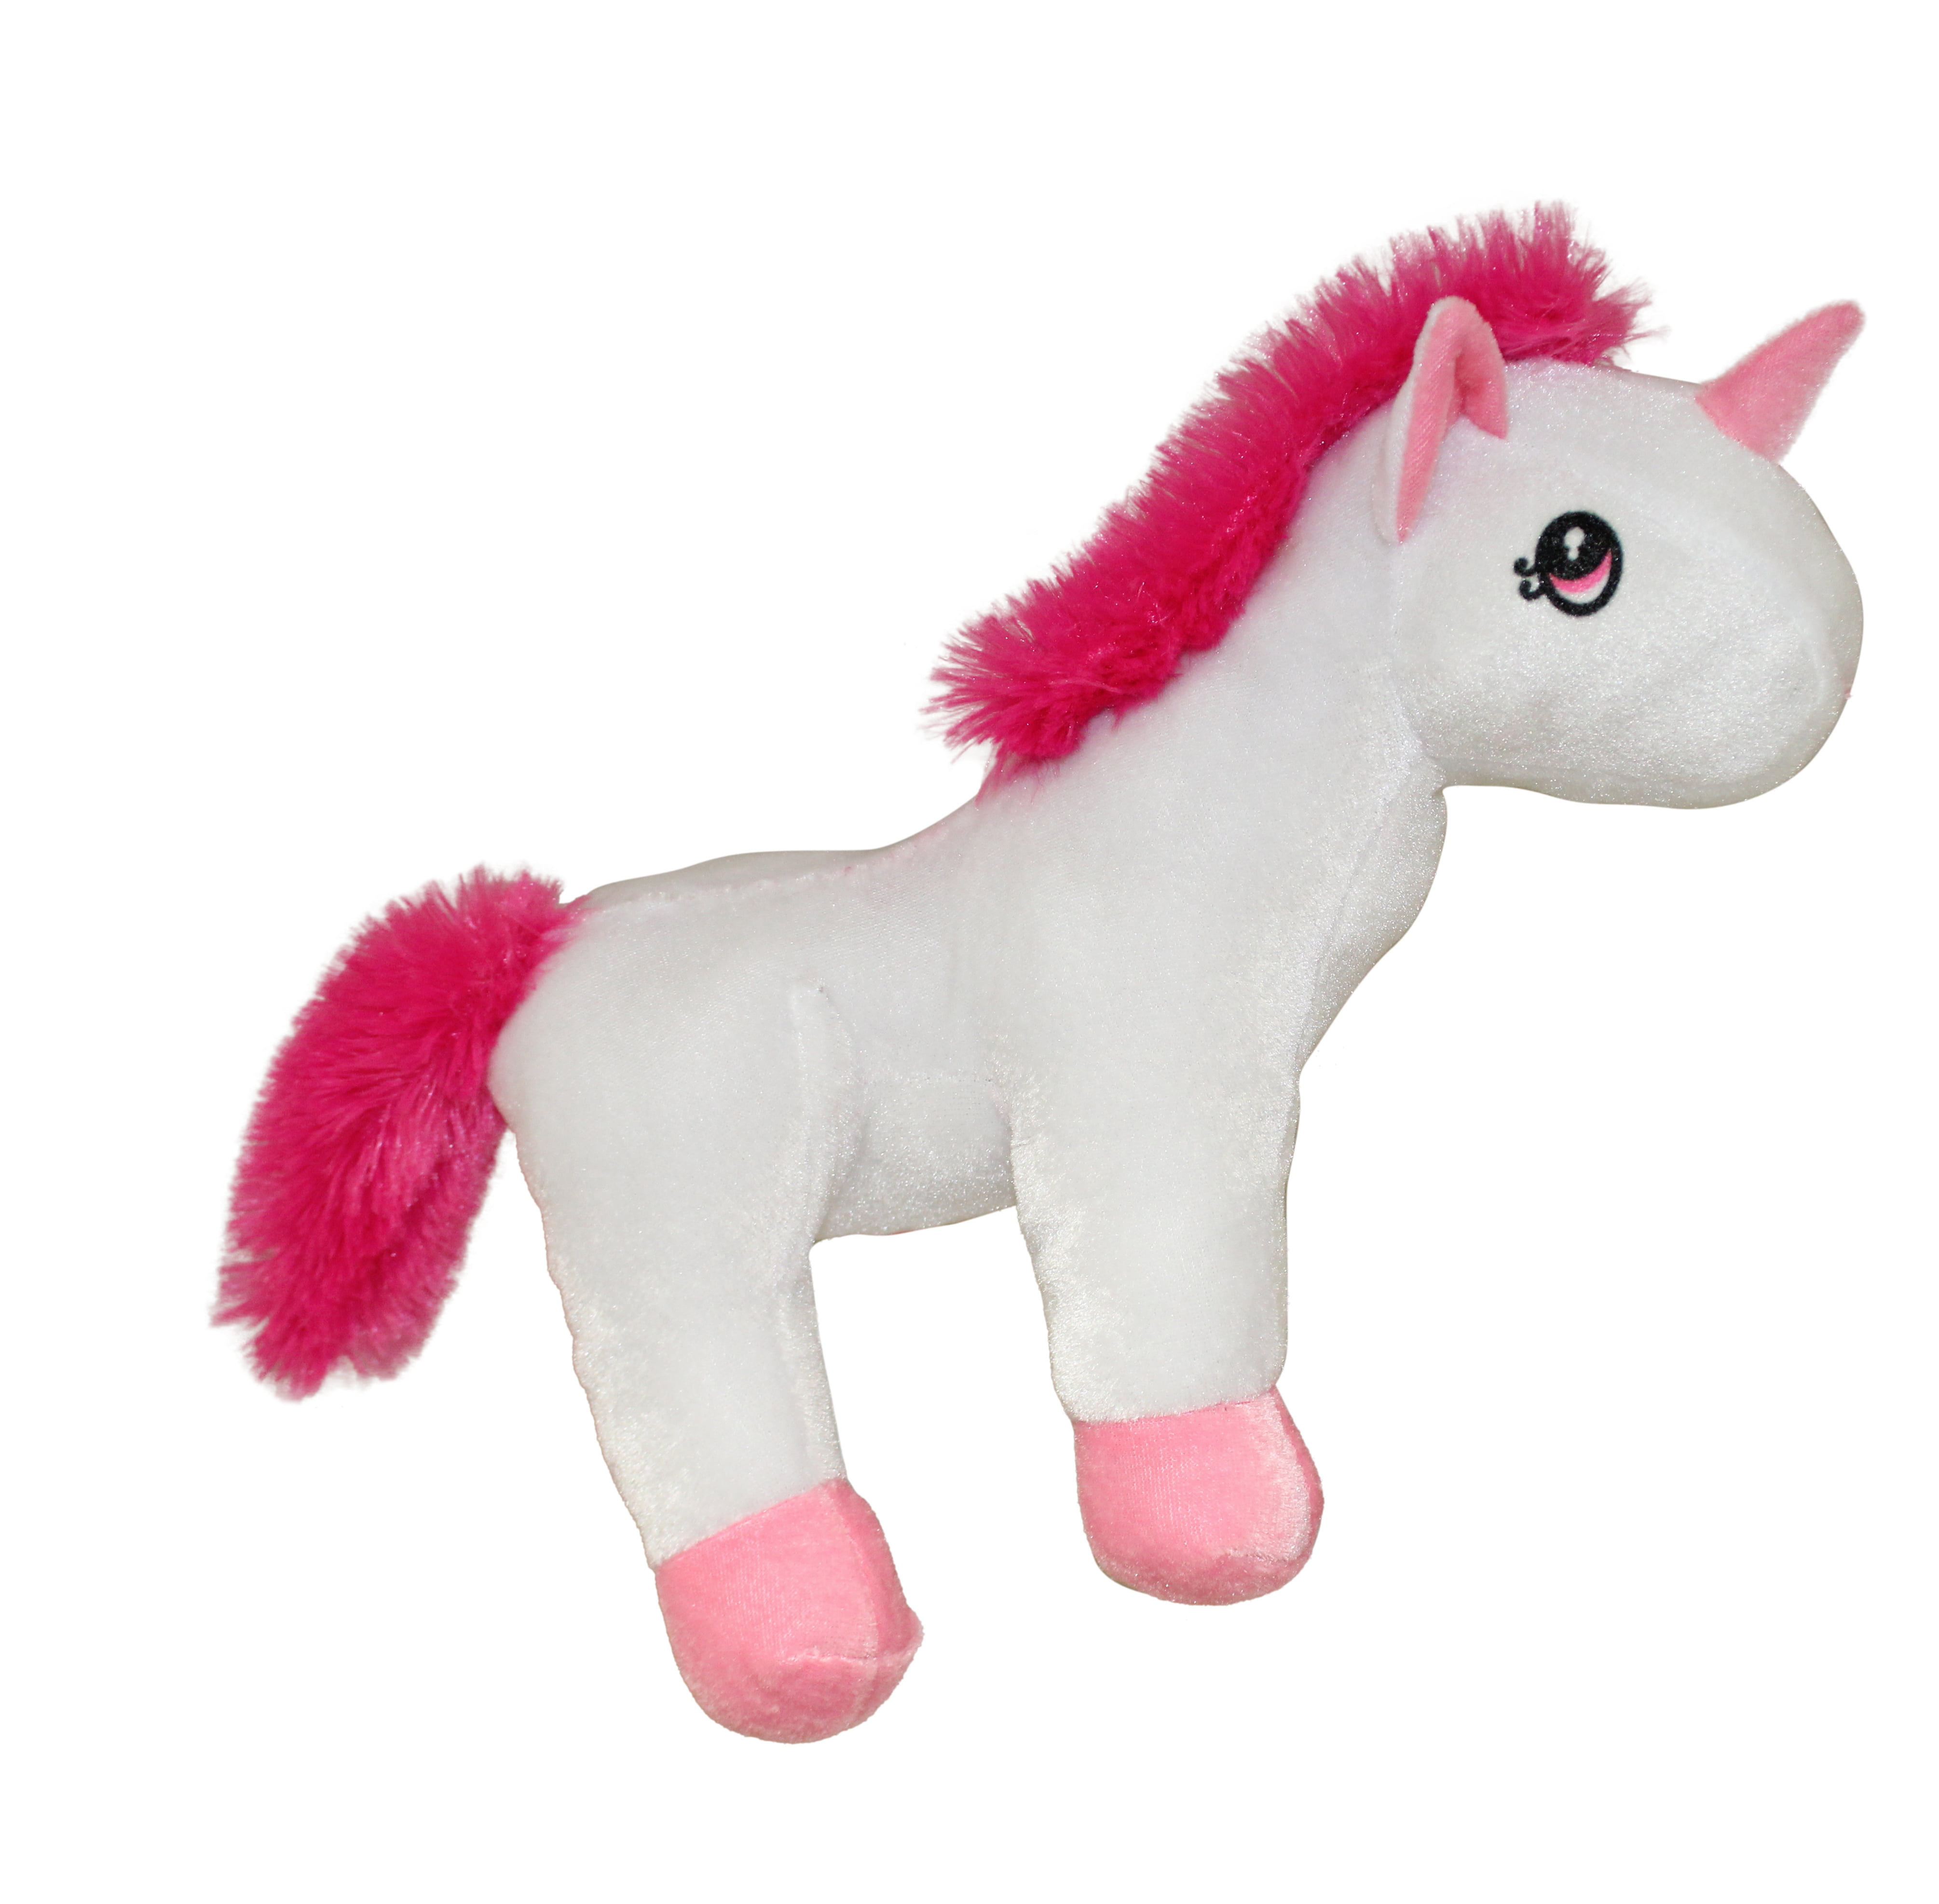 12" Laying Sugar Unicorn Plush Stuffed Animal Purple Blue Pink Sparkle Fluffy 